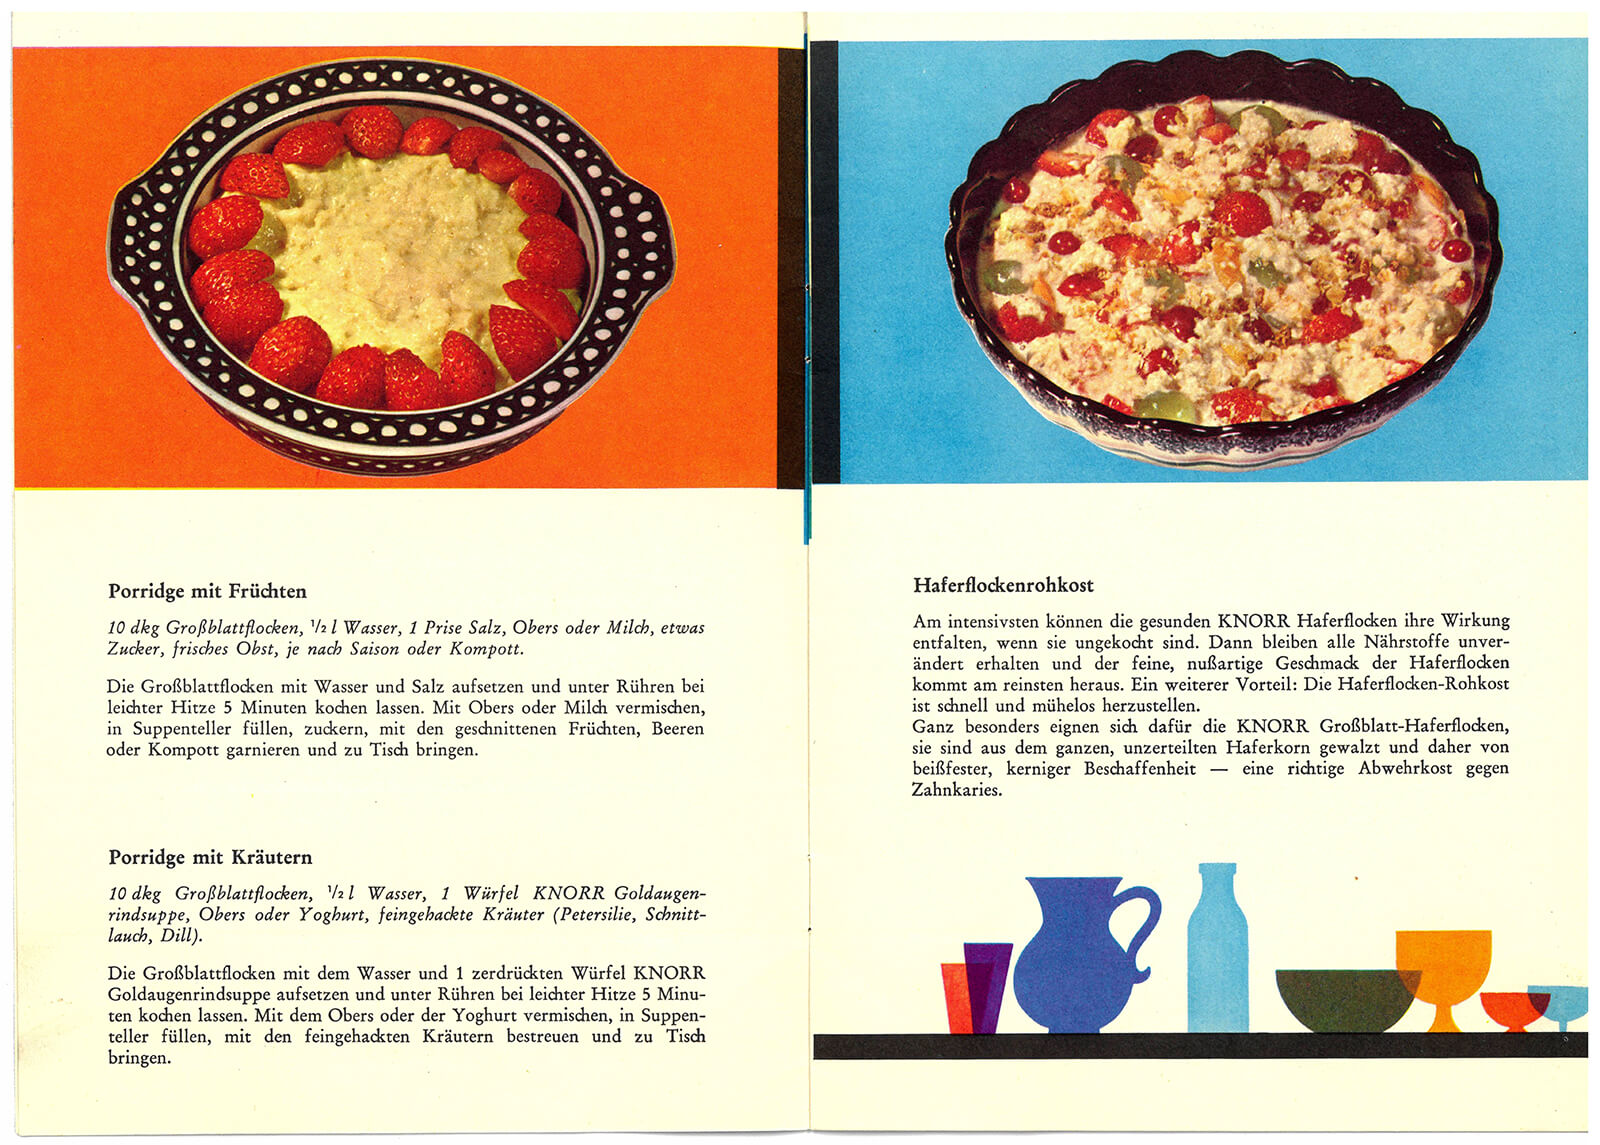 Porridgerezepte aus einer Broschüre der Firma Knorr, 1960er Jahre, Privatbesitz Susanne Breuss 